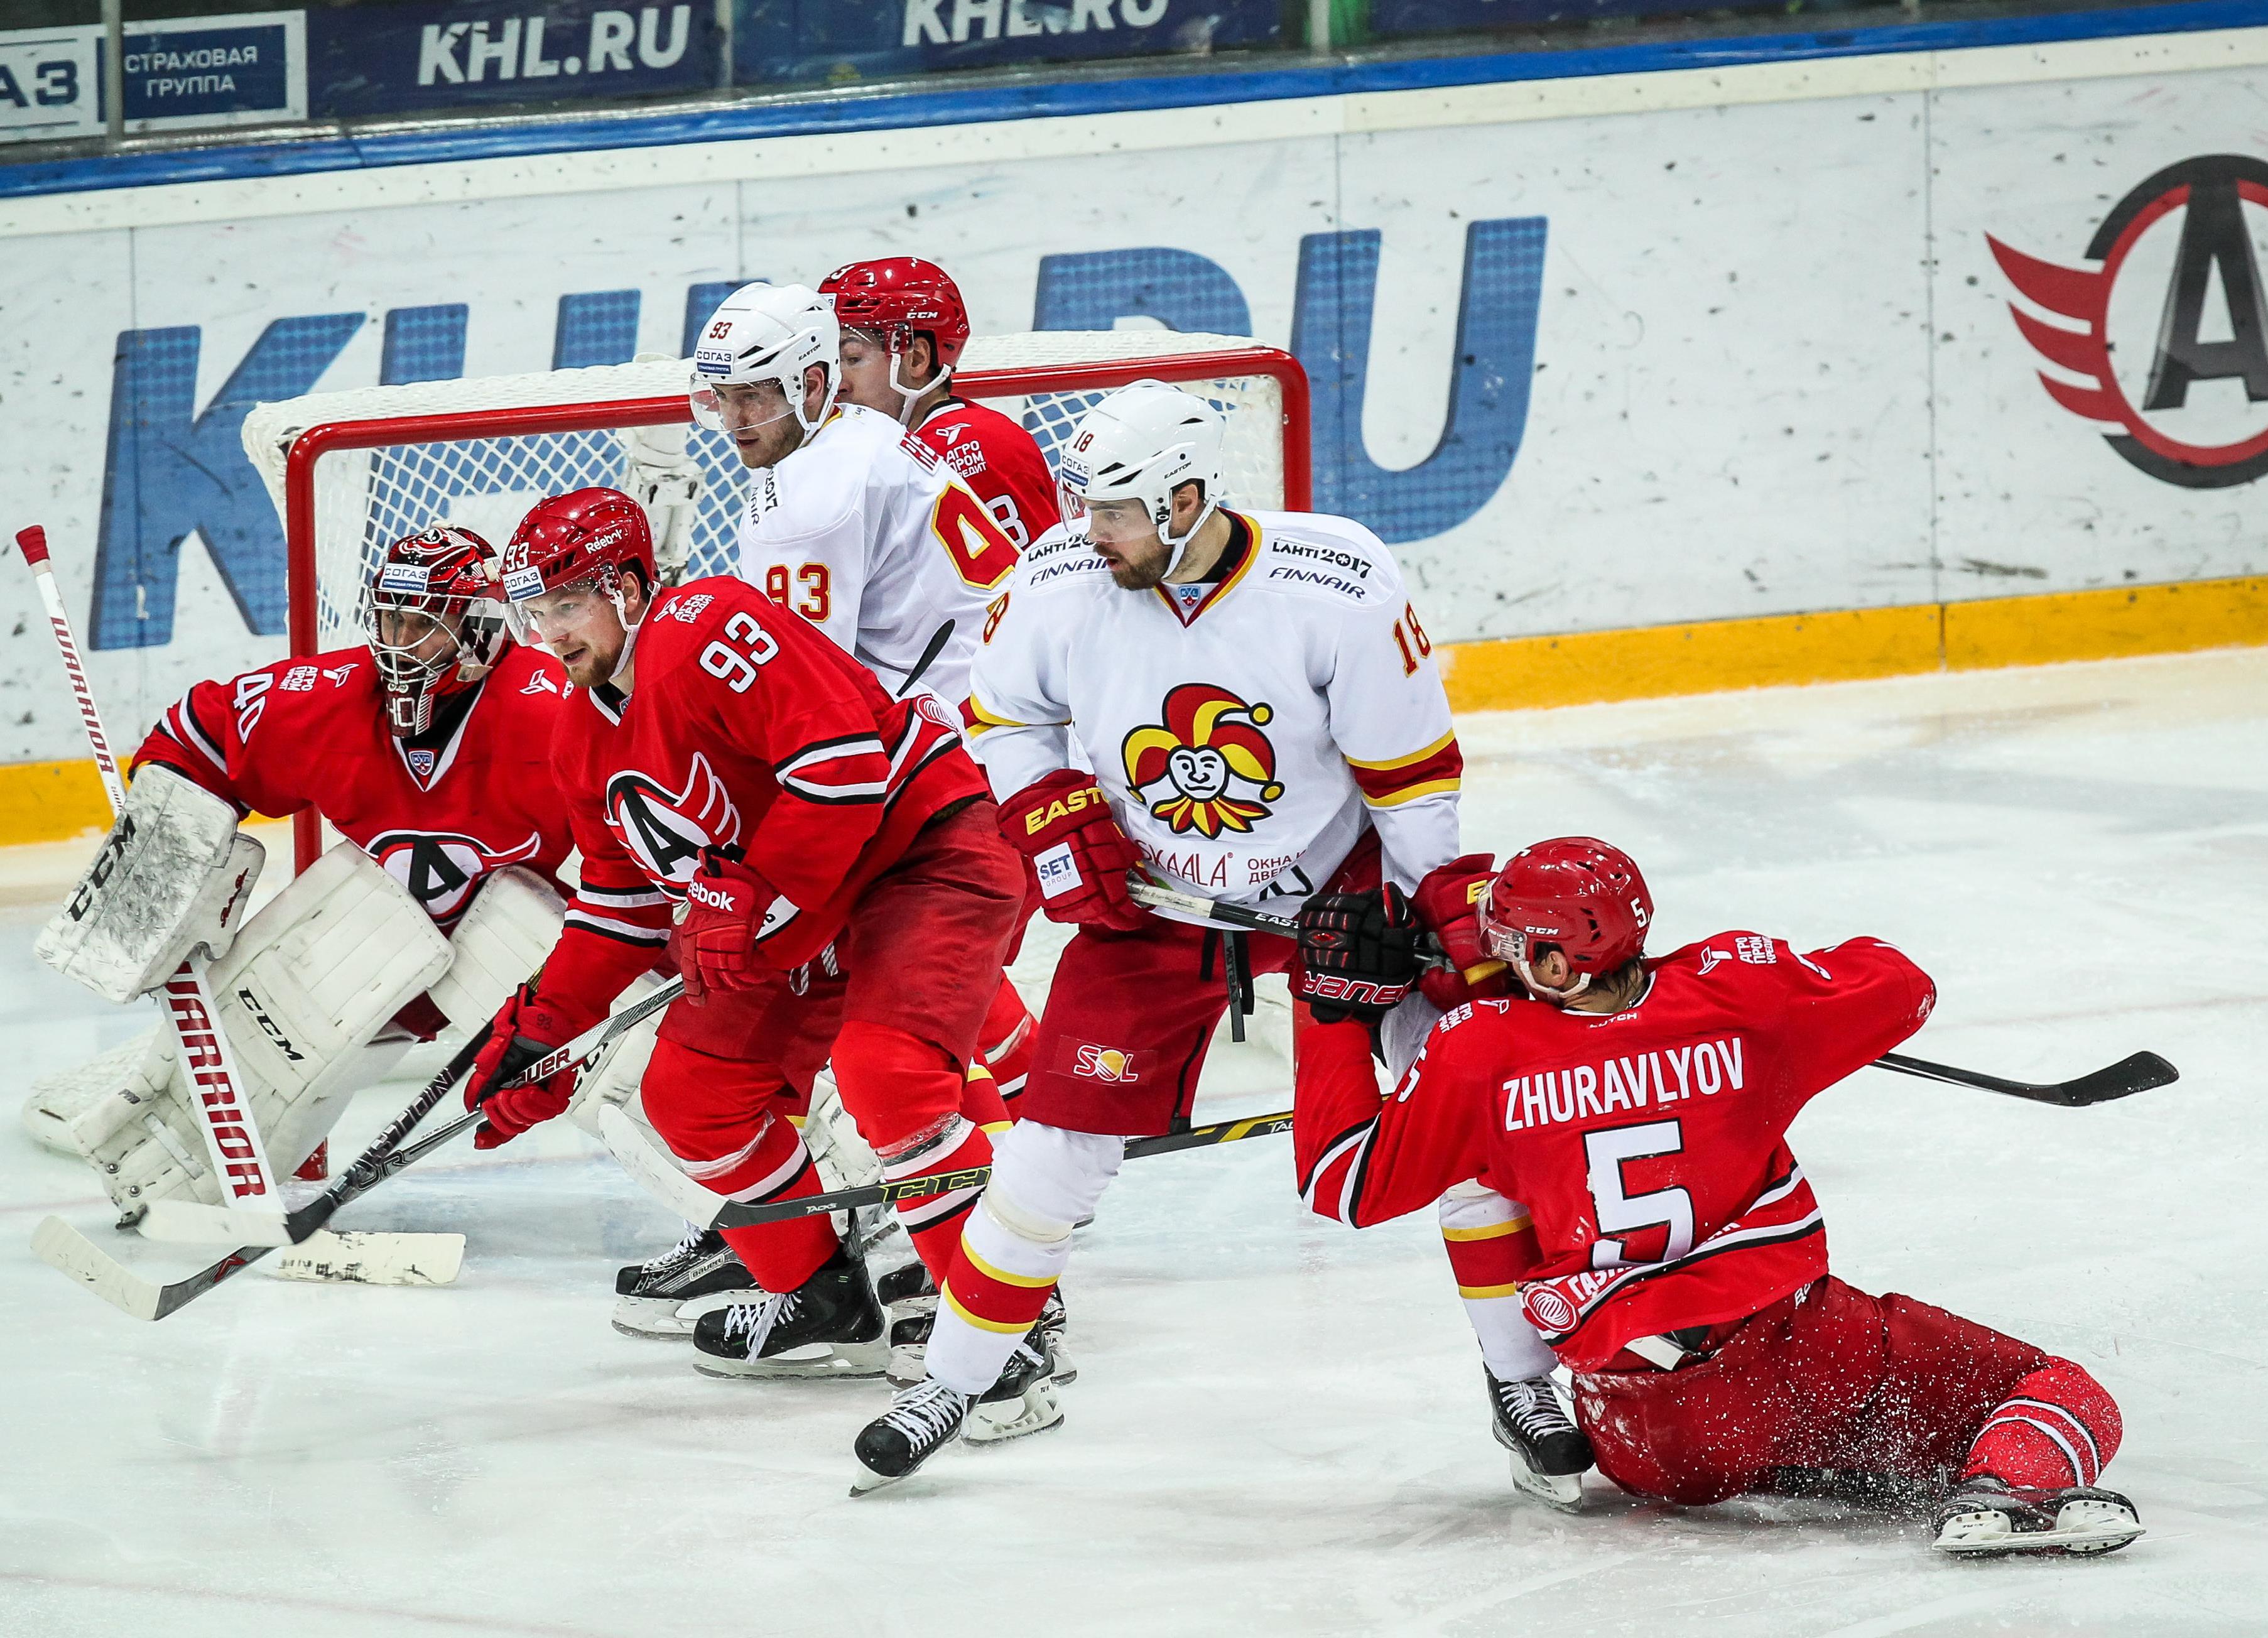 KHL: Sven Andrighetto mit Siegesserie – Tomi Karhunen überzeugt